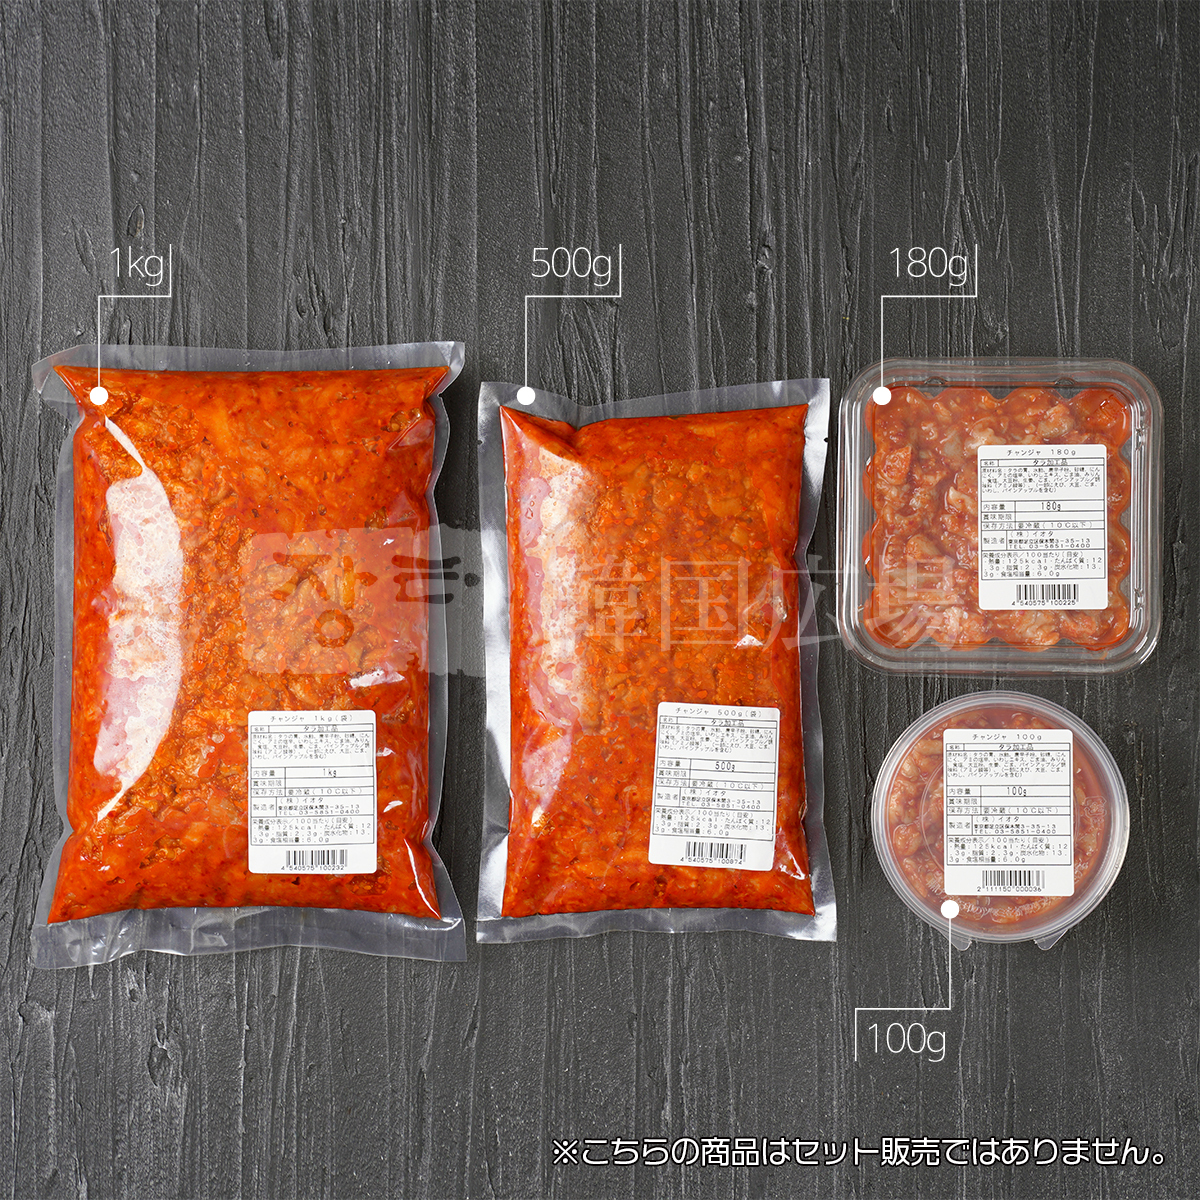  channja salt .100g / Korea food Korea cooking 